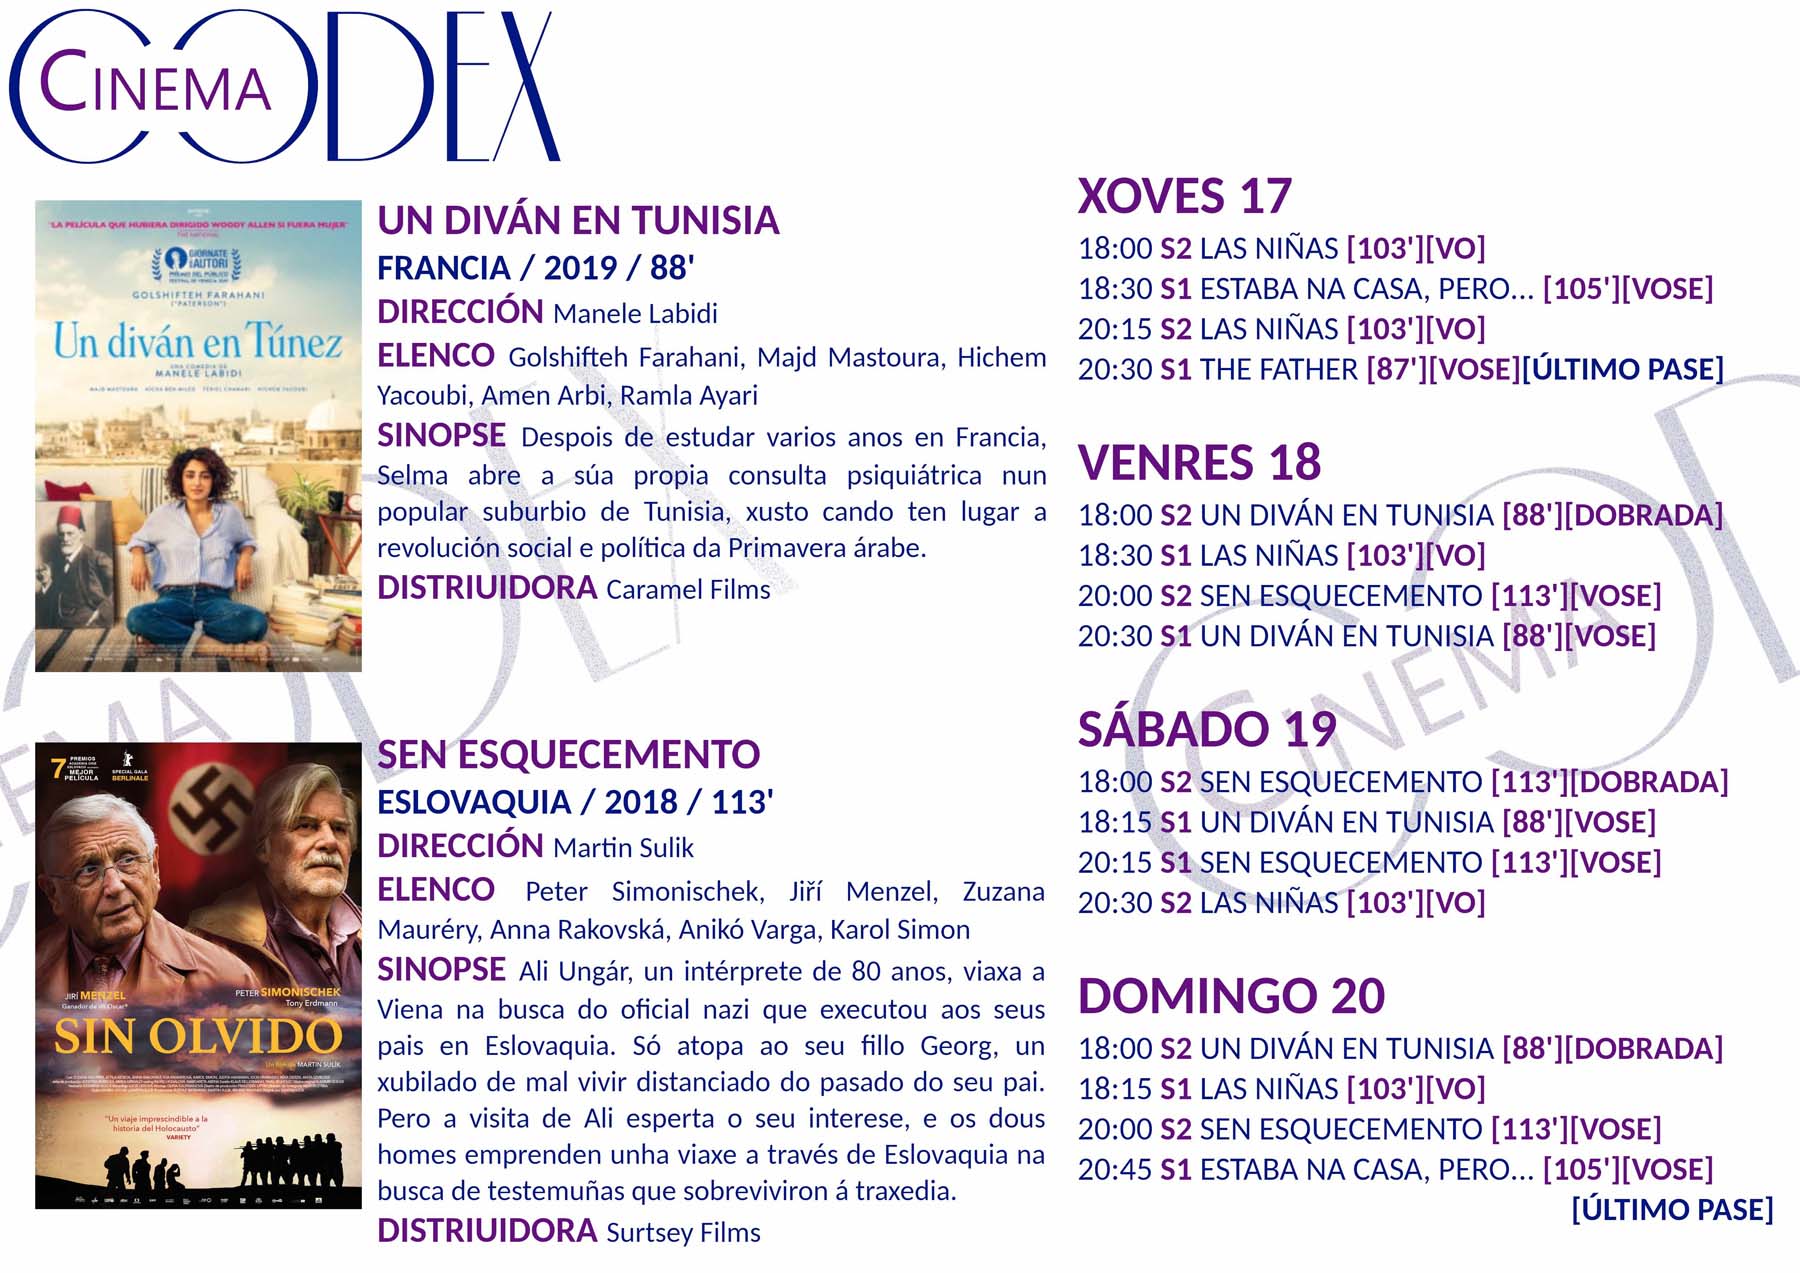 Grella dos Codex Cinema xoves 17/09 en adiante